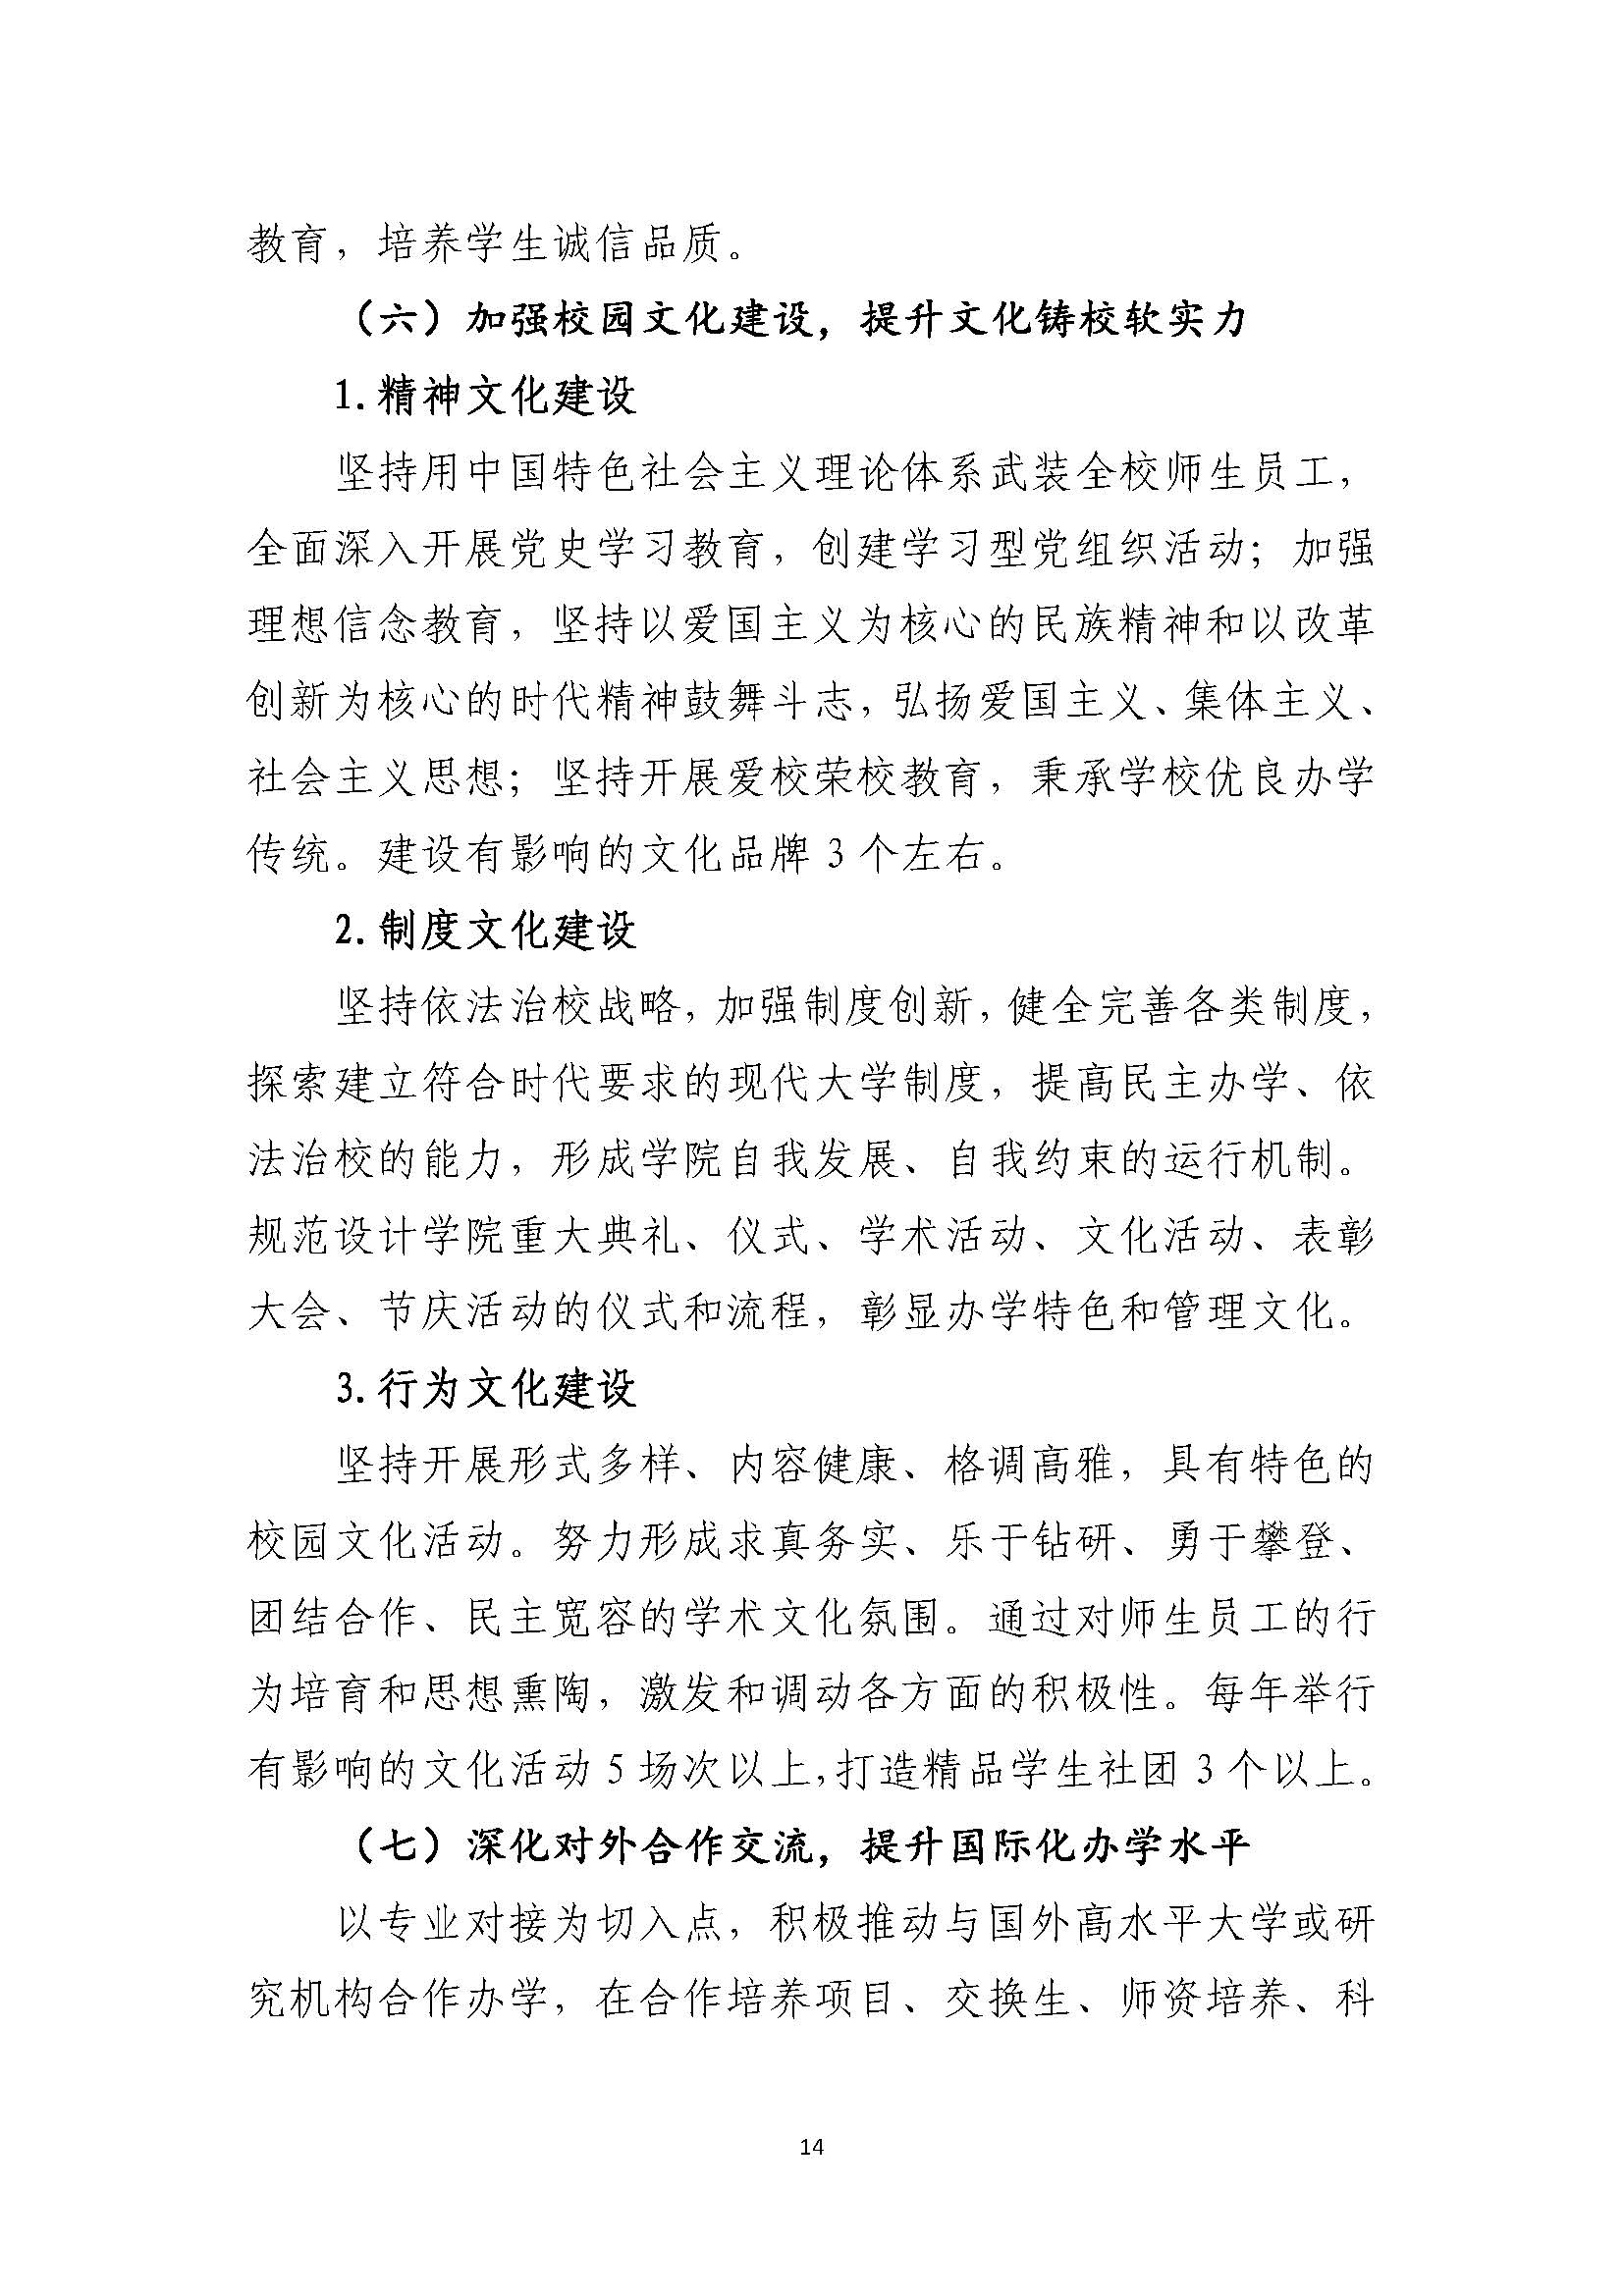 郑州黄河护理职业学院2021-2025年发展规划_页面_14.jpg